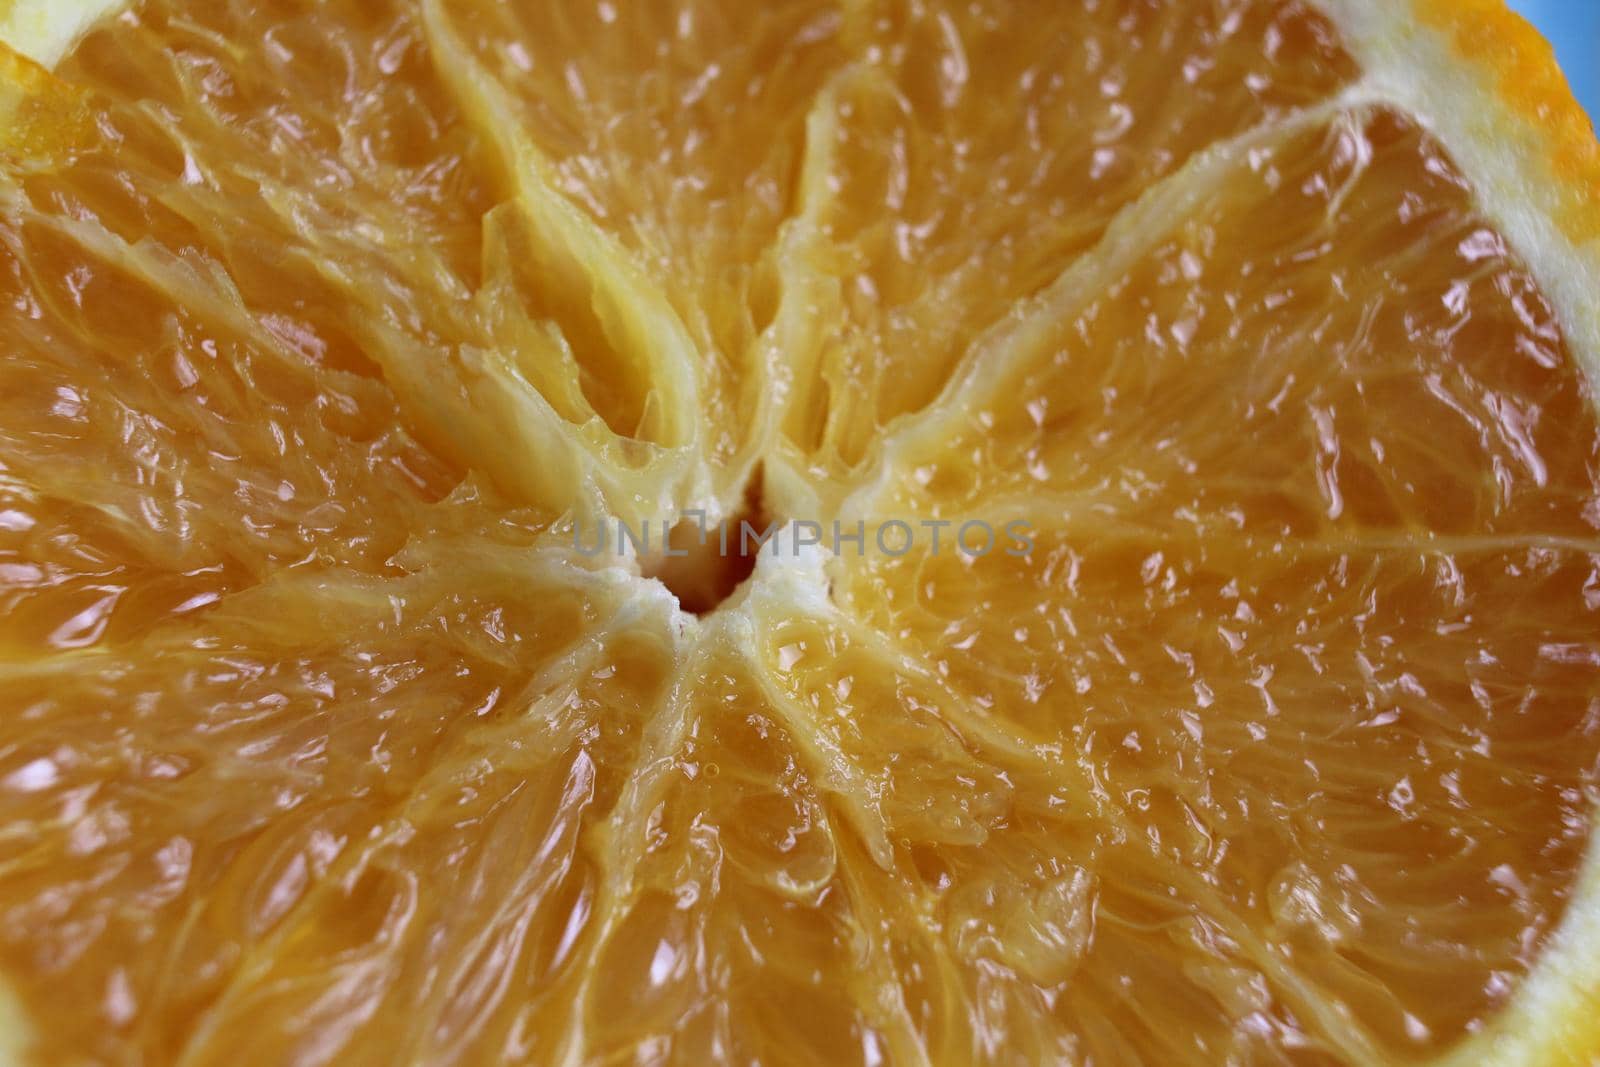 cut of the orange close-up. Macro photo of eating orange fruit. Orange fruit background by Shoba